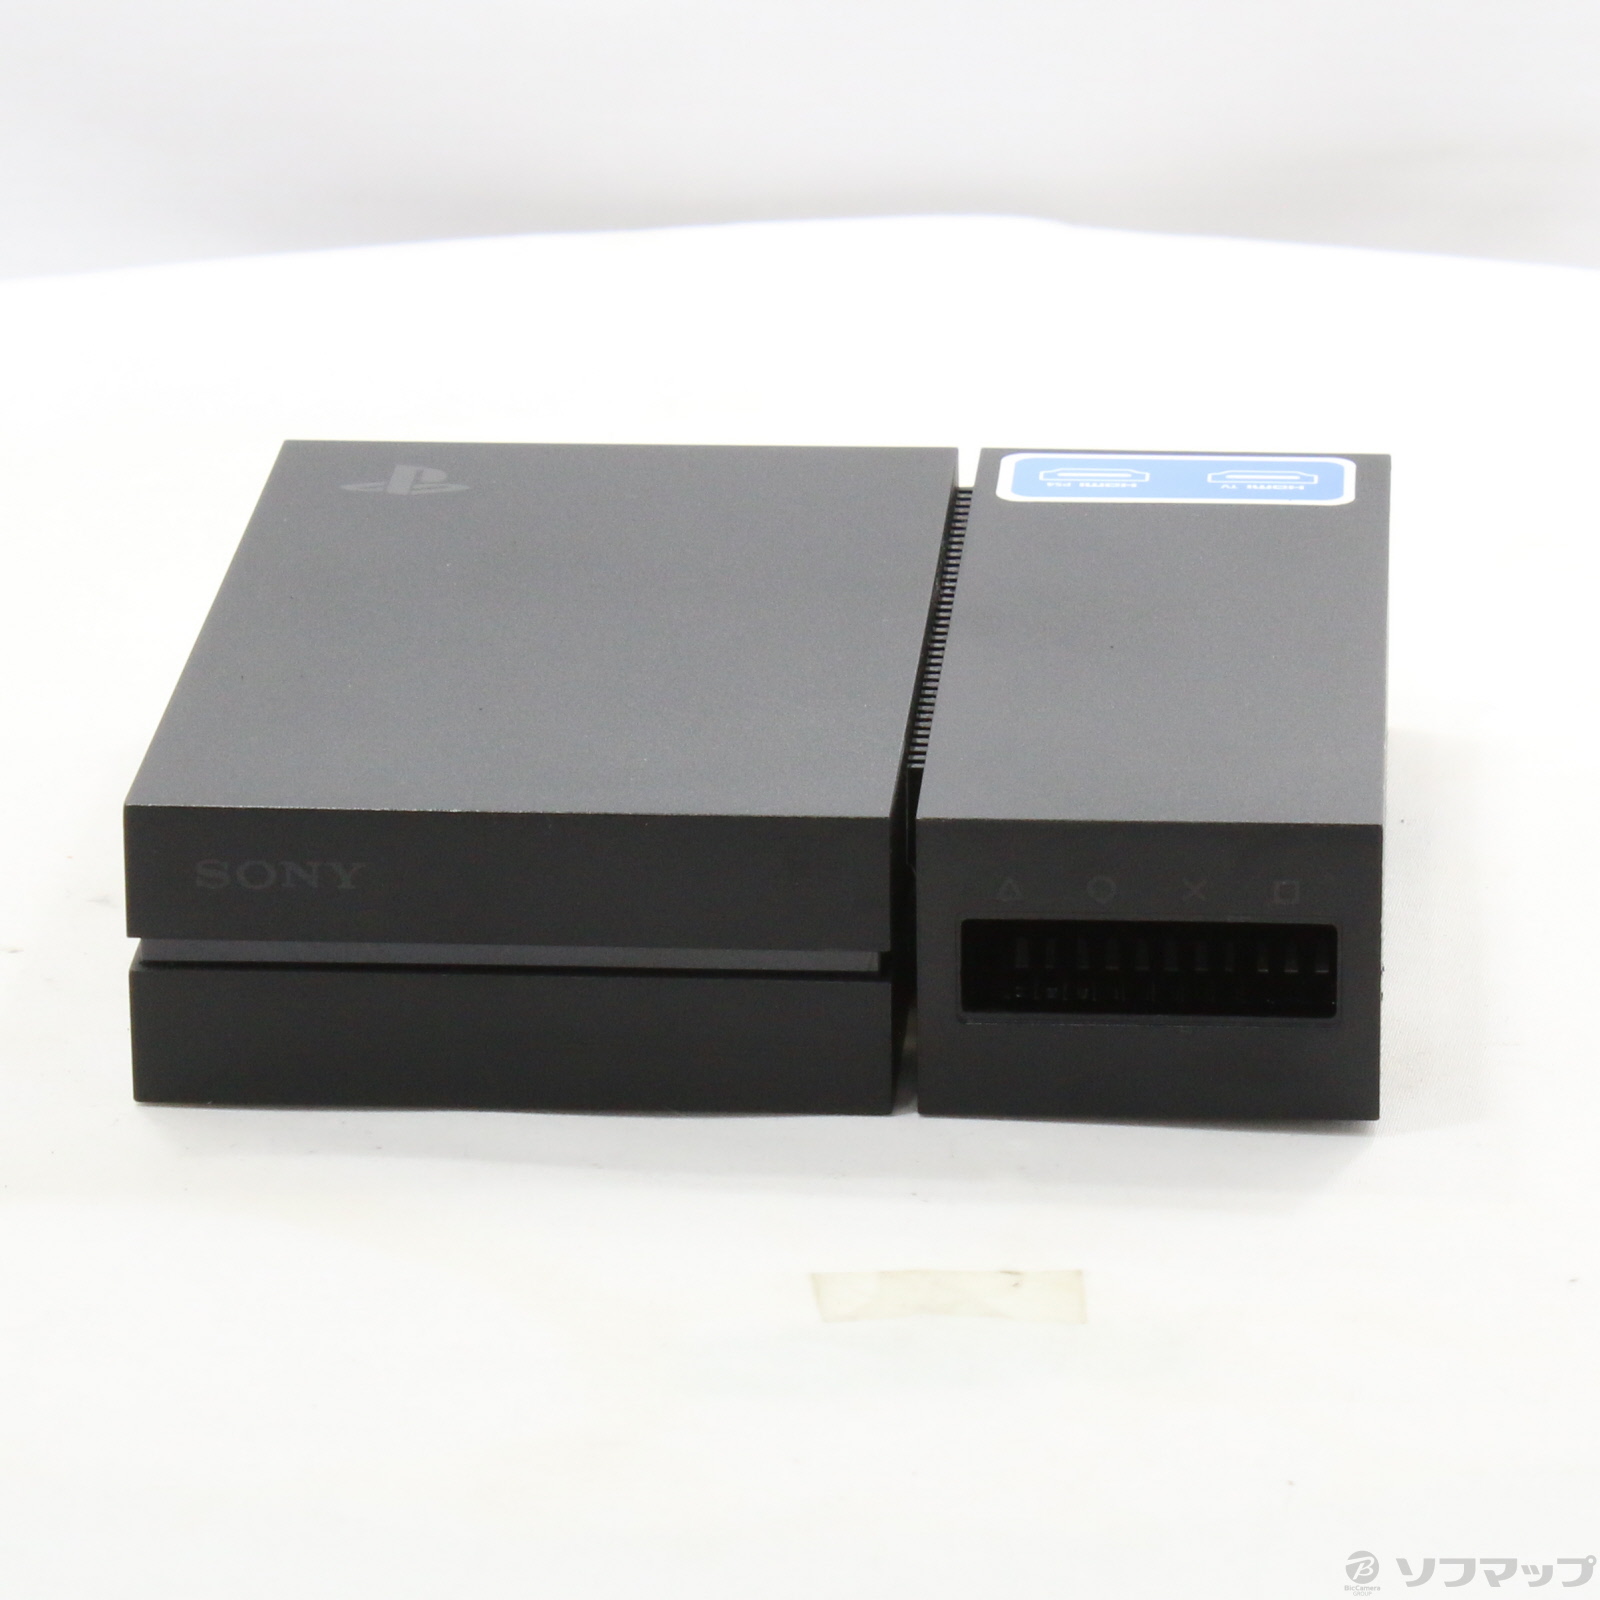 セール対象品 PlayStation VR CUHJ-16000